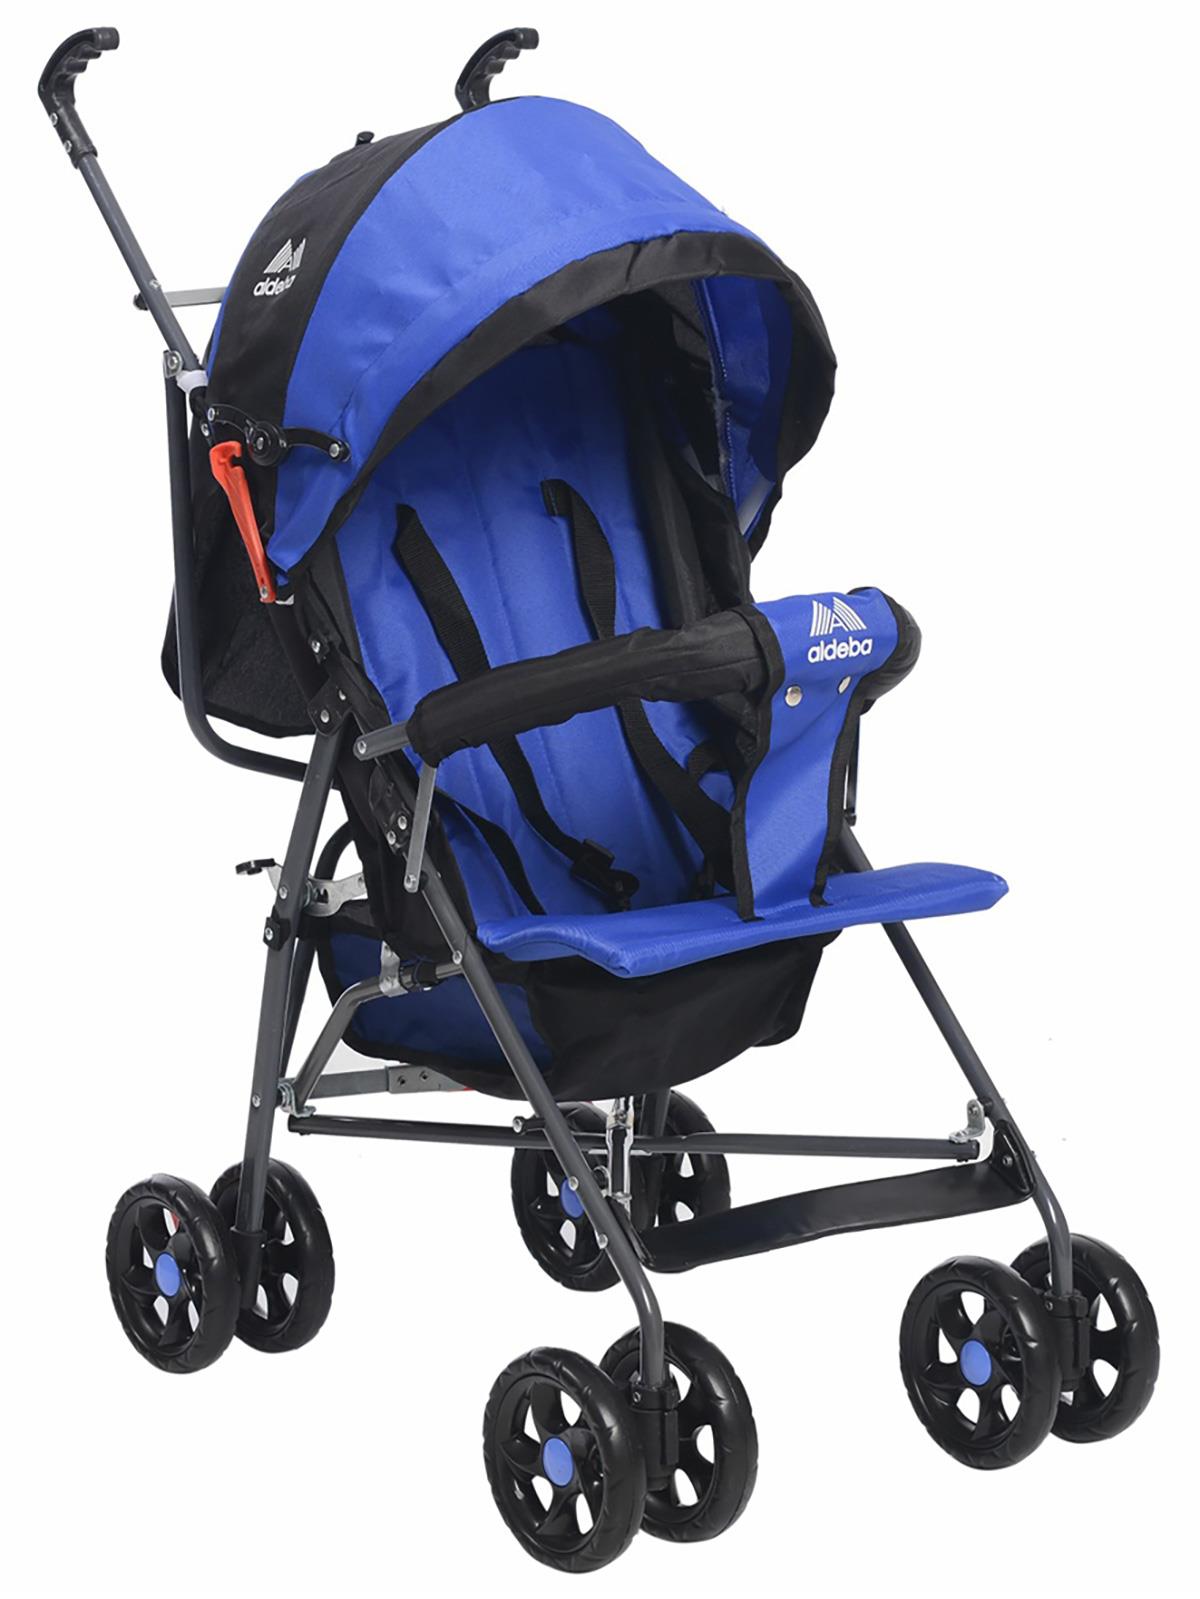 Aldeba 3018 Yarım Yatarlı Baston Bebek Arabası Mavi